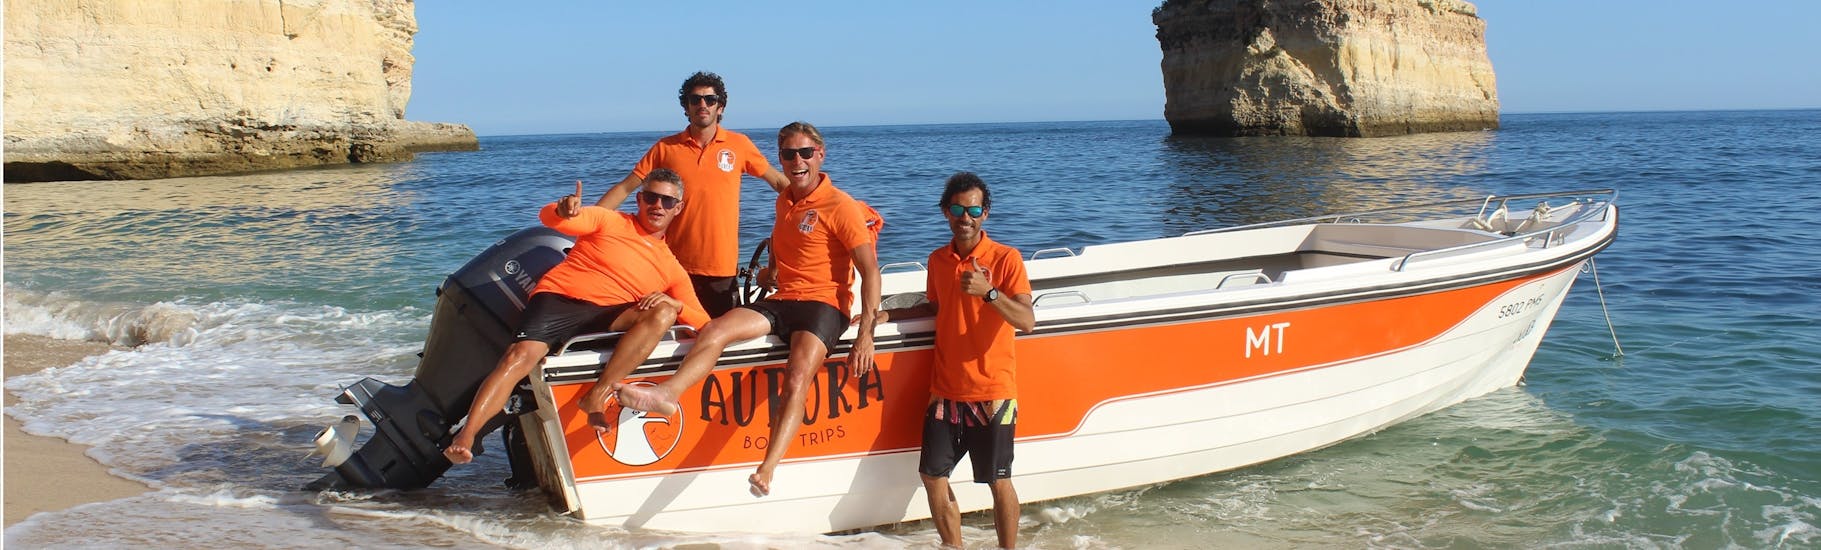 Il nostro equipaggio con l'imbarcazione utilizzata durante un giro in barca da Armação de Pêra a 15 grotte tra cui Benagil con Aurora Boat Trips.